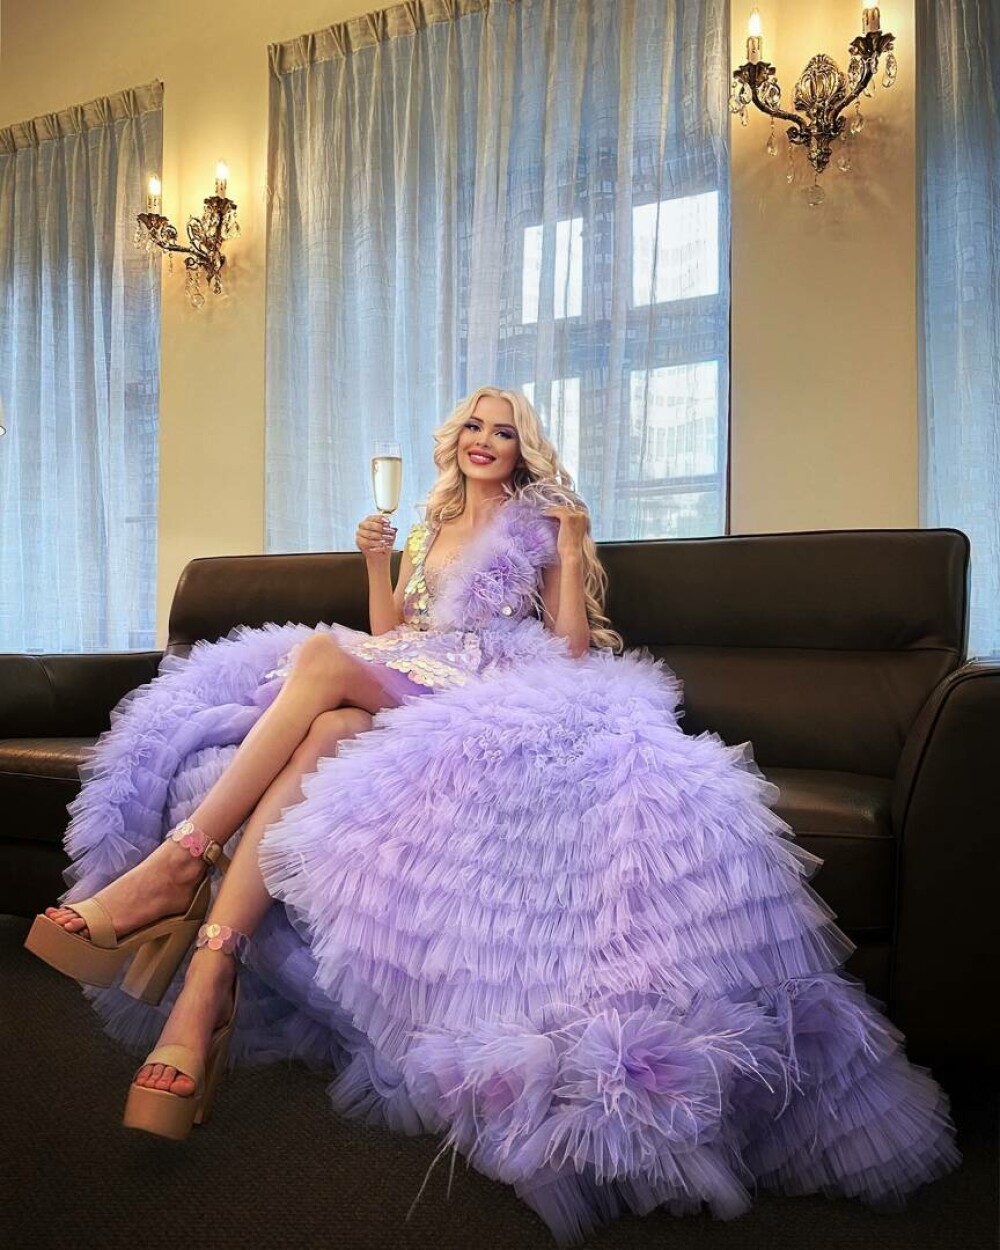 Cum arată „Barbie din viața reală”. Solista din Cehia povestește că a fost la un pas să fie „cumpărată” de un producător - Imaginea 13